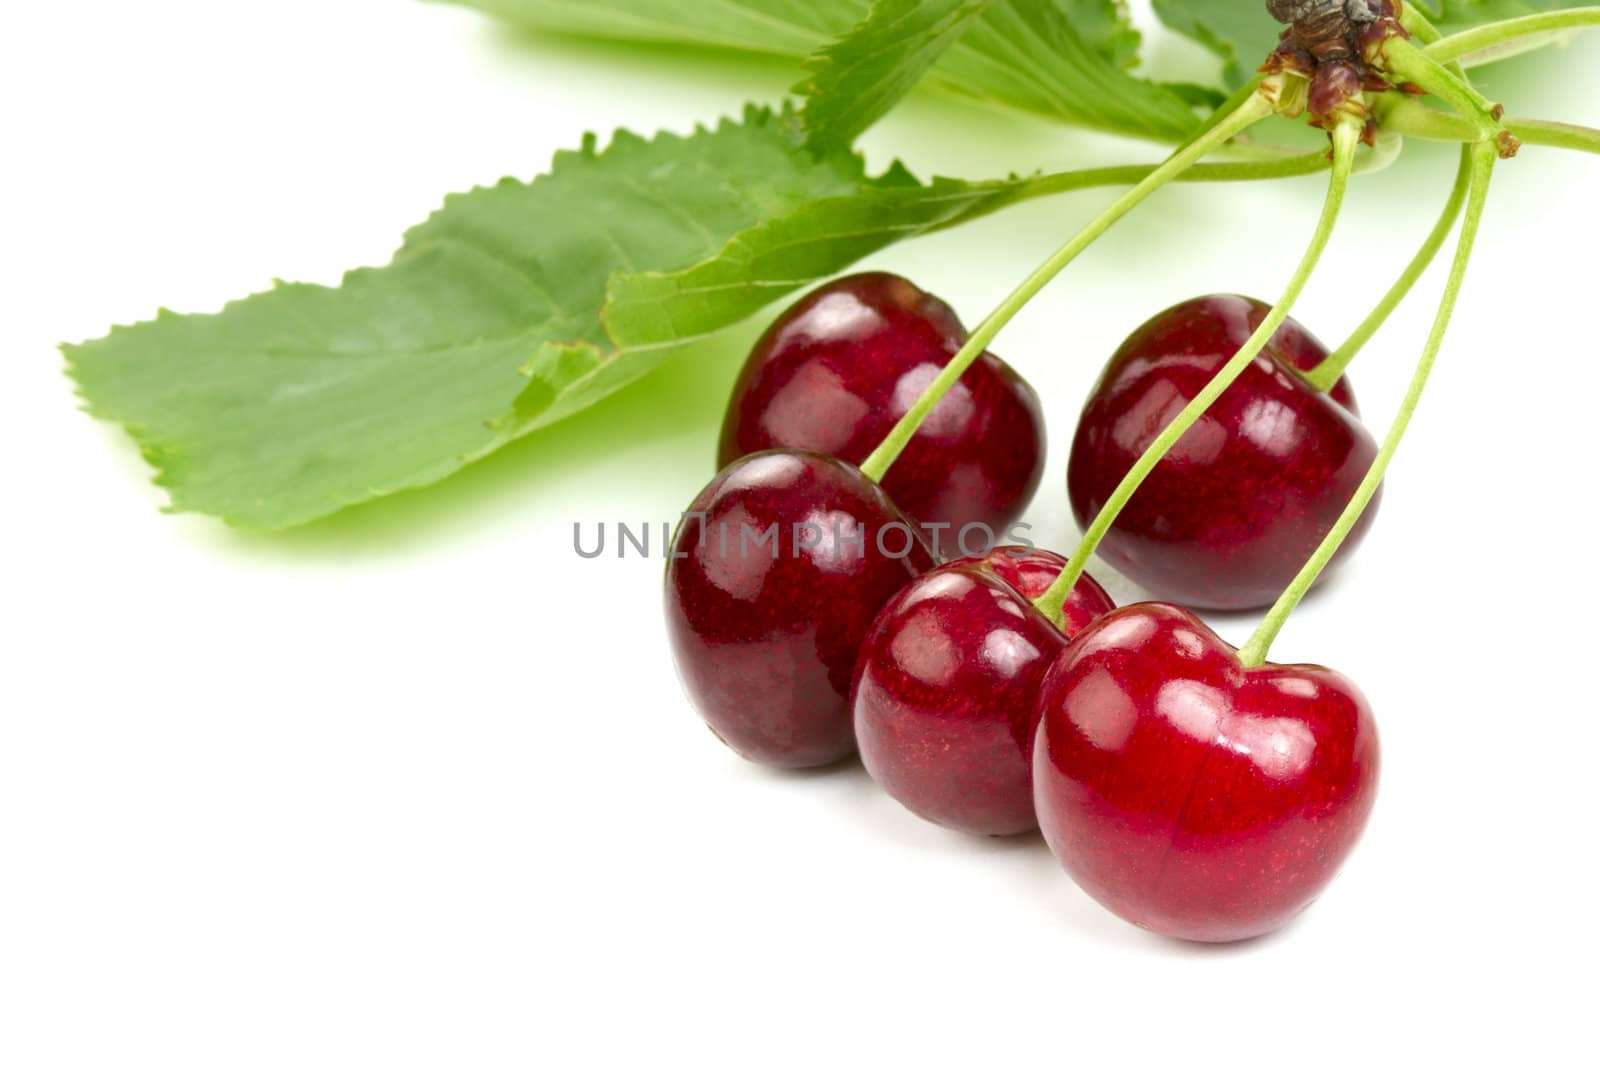 Cherries by Kamensky